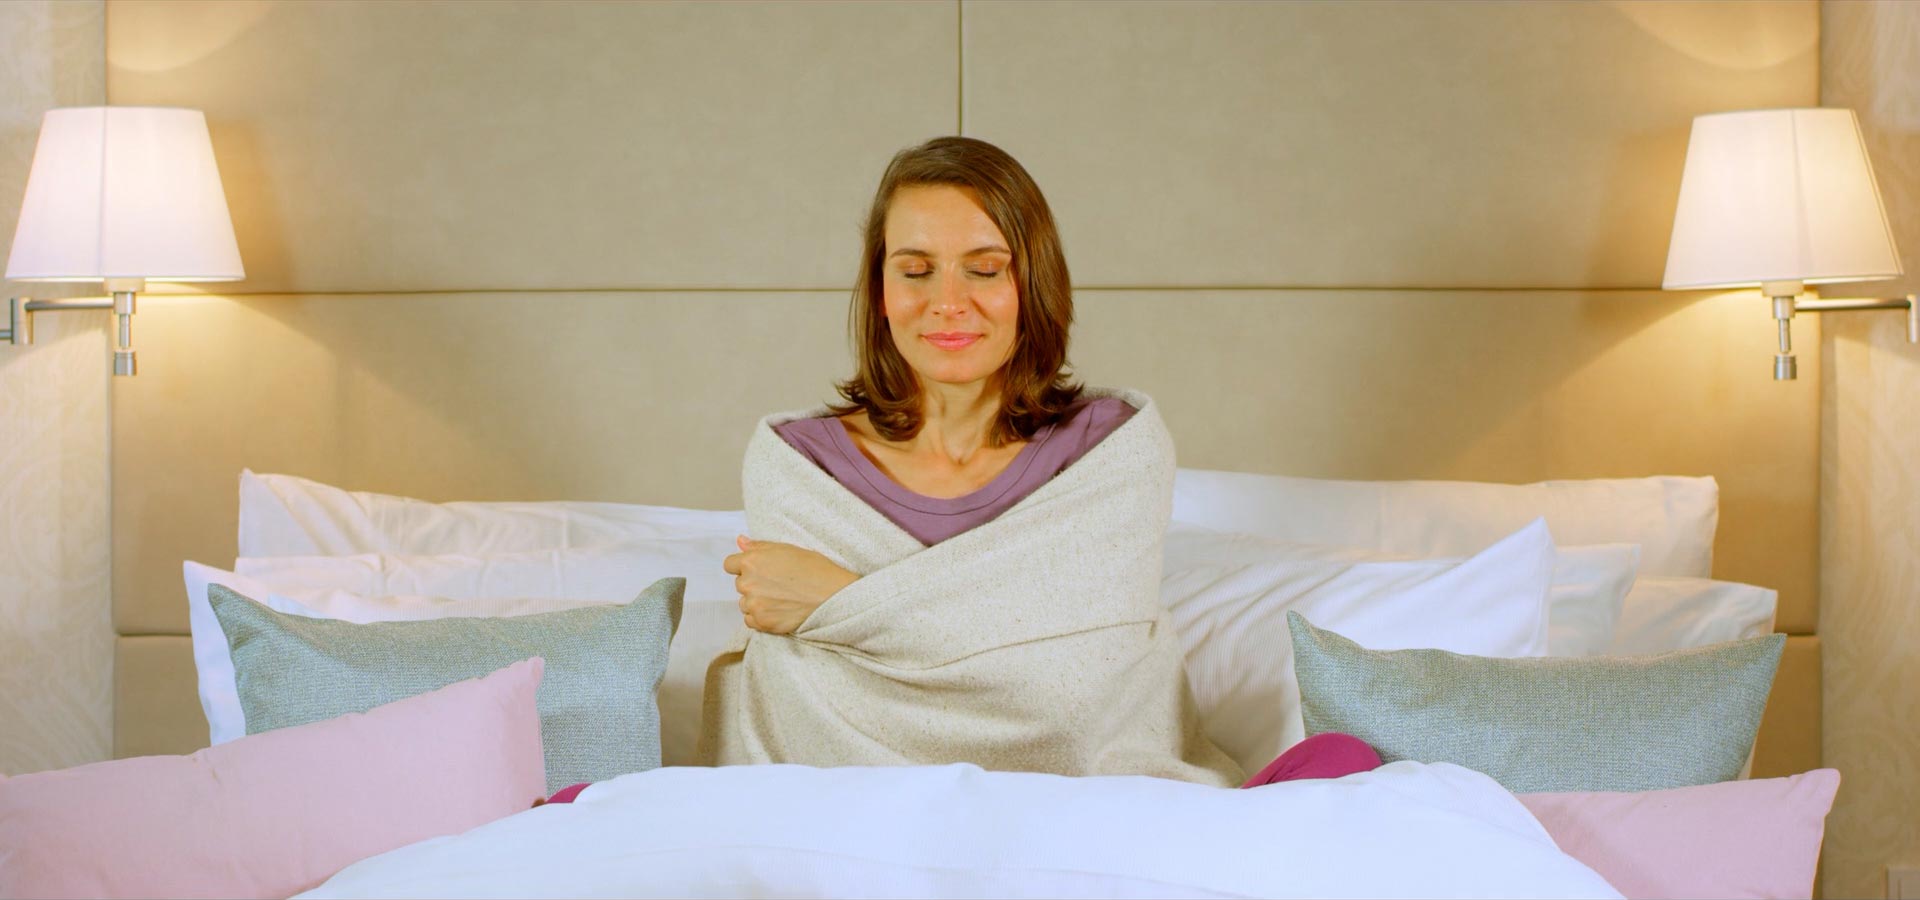 Eine Frau enspannt auf einem Bett